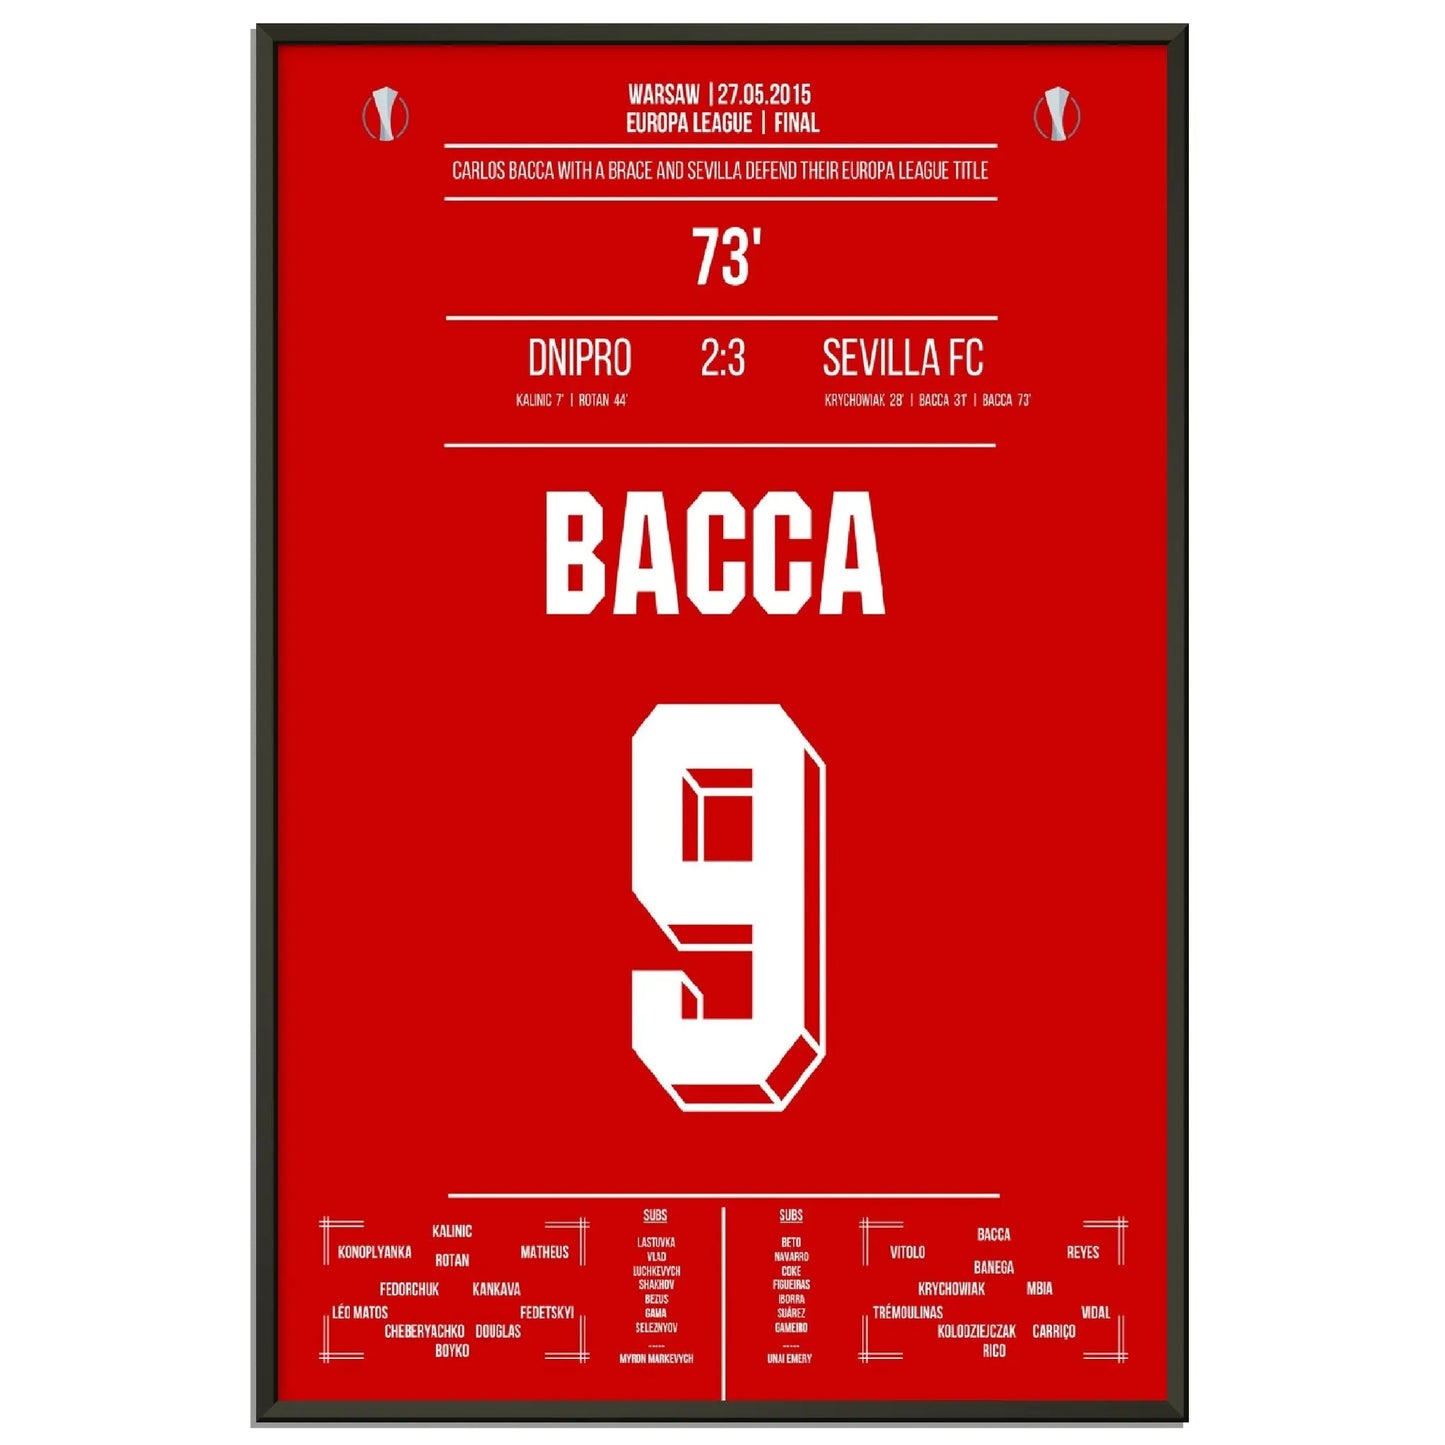 Bacca mit zwei Toren bei Sevilla's Titelverteidigung in der Europa League 2015 